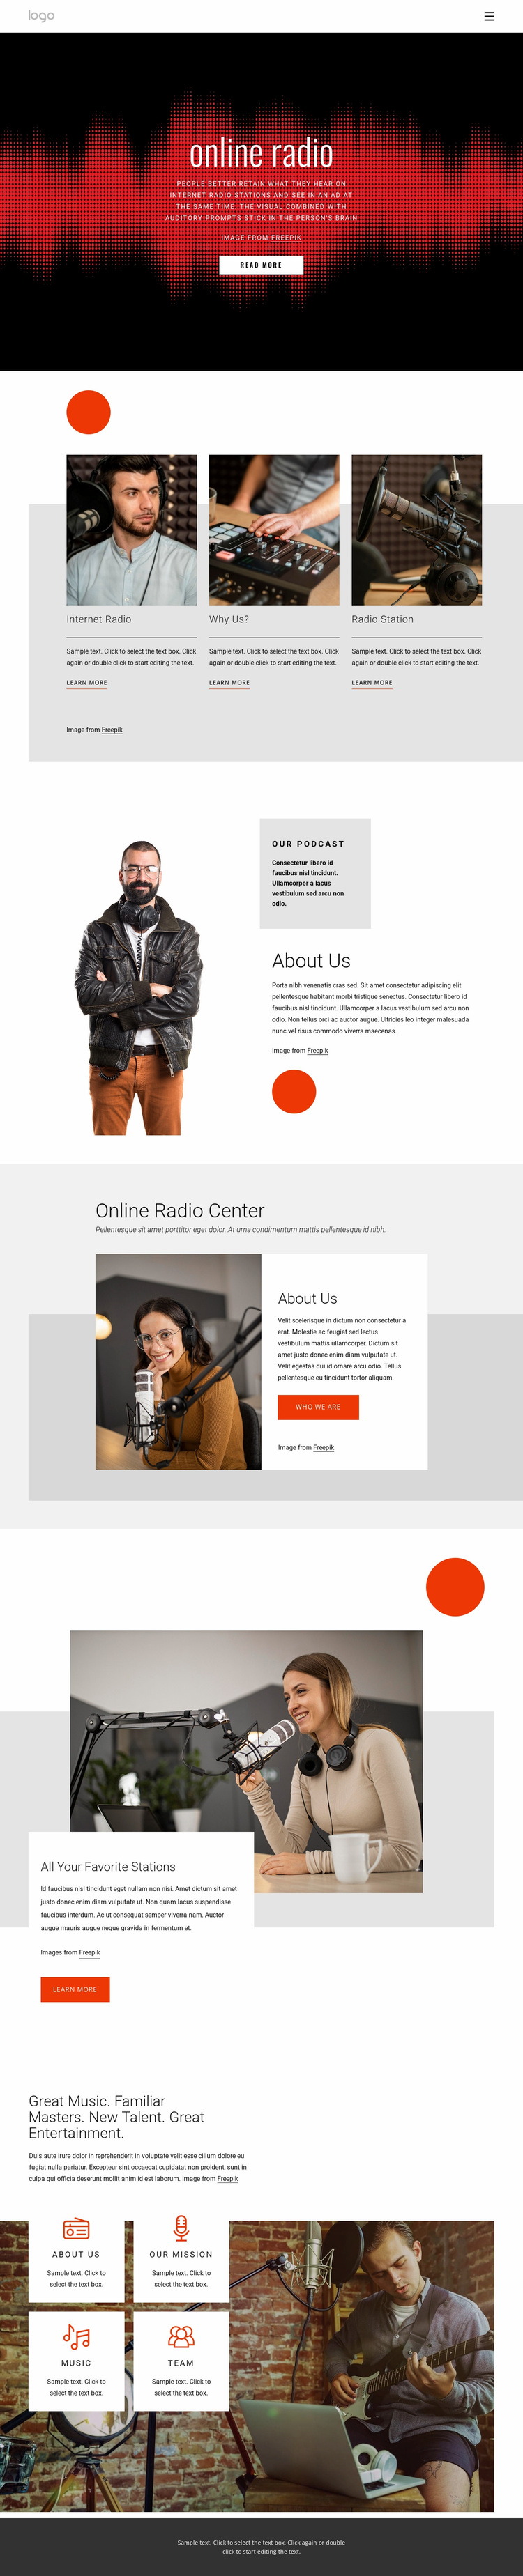 Online radio shows Website Design